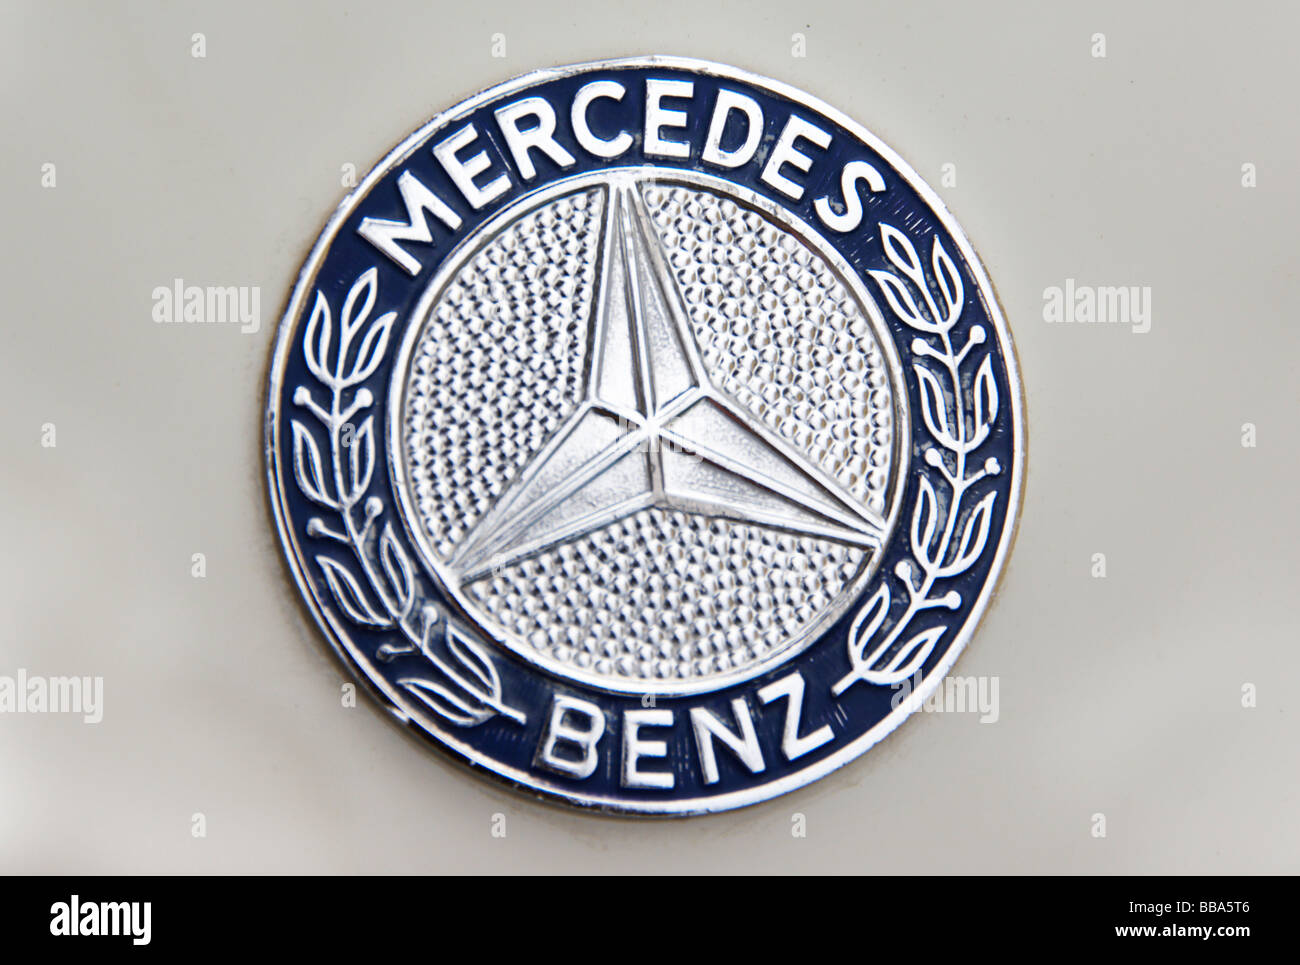 Ancien logo Mercedes Benz sur voiture classique Banque D'Images